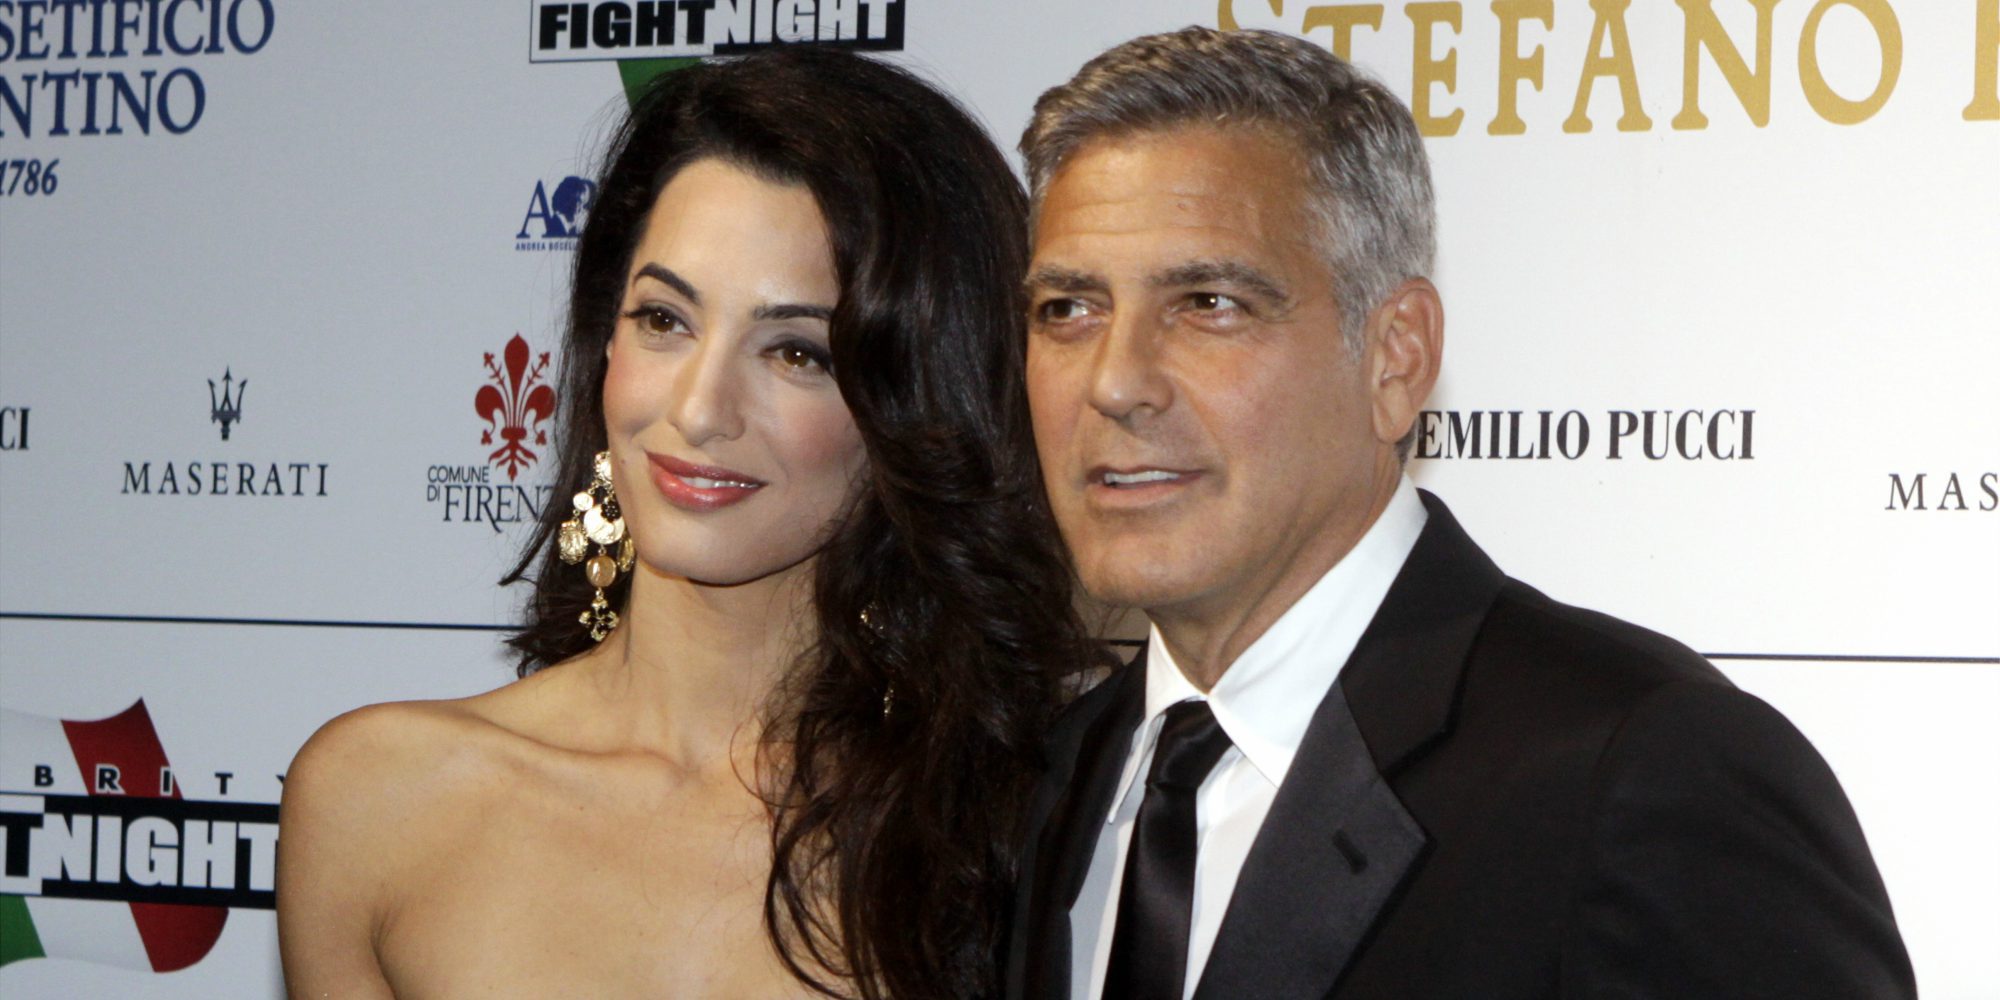 George Clooney denunciará a la revista que publicó la fotografía de sus hijos tras colarse en su casa